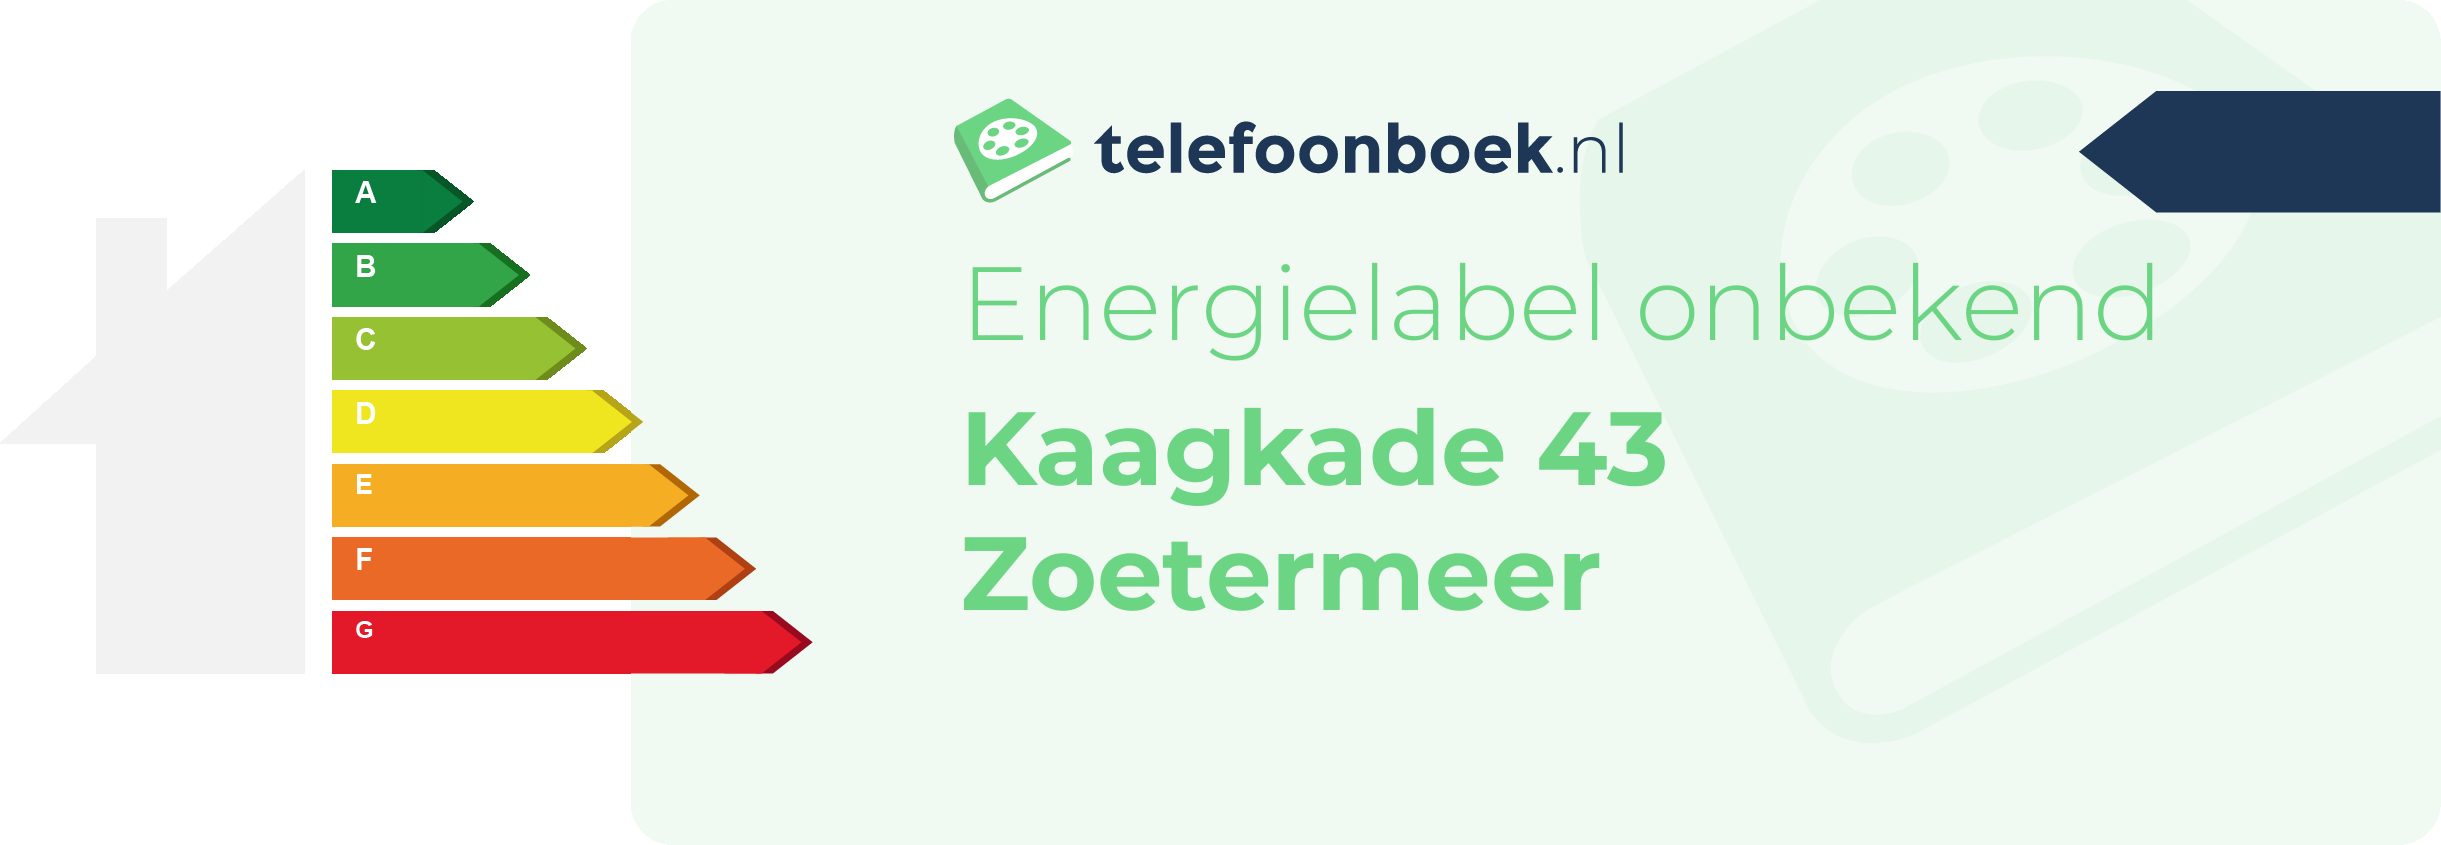 Energielabel Kaagkade 43 Zoetermeer